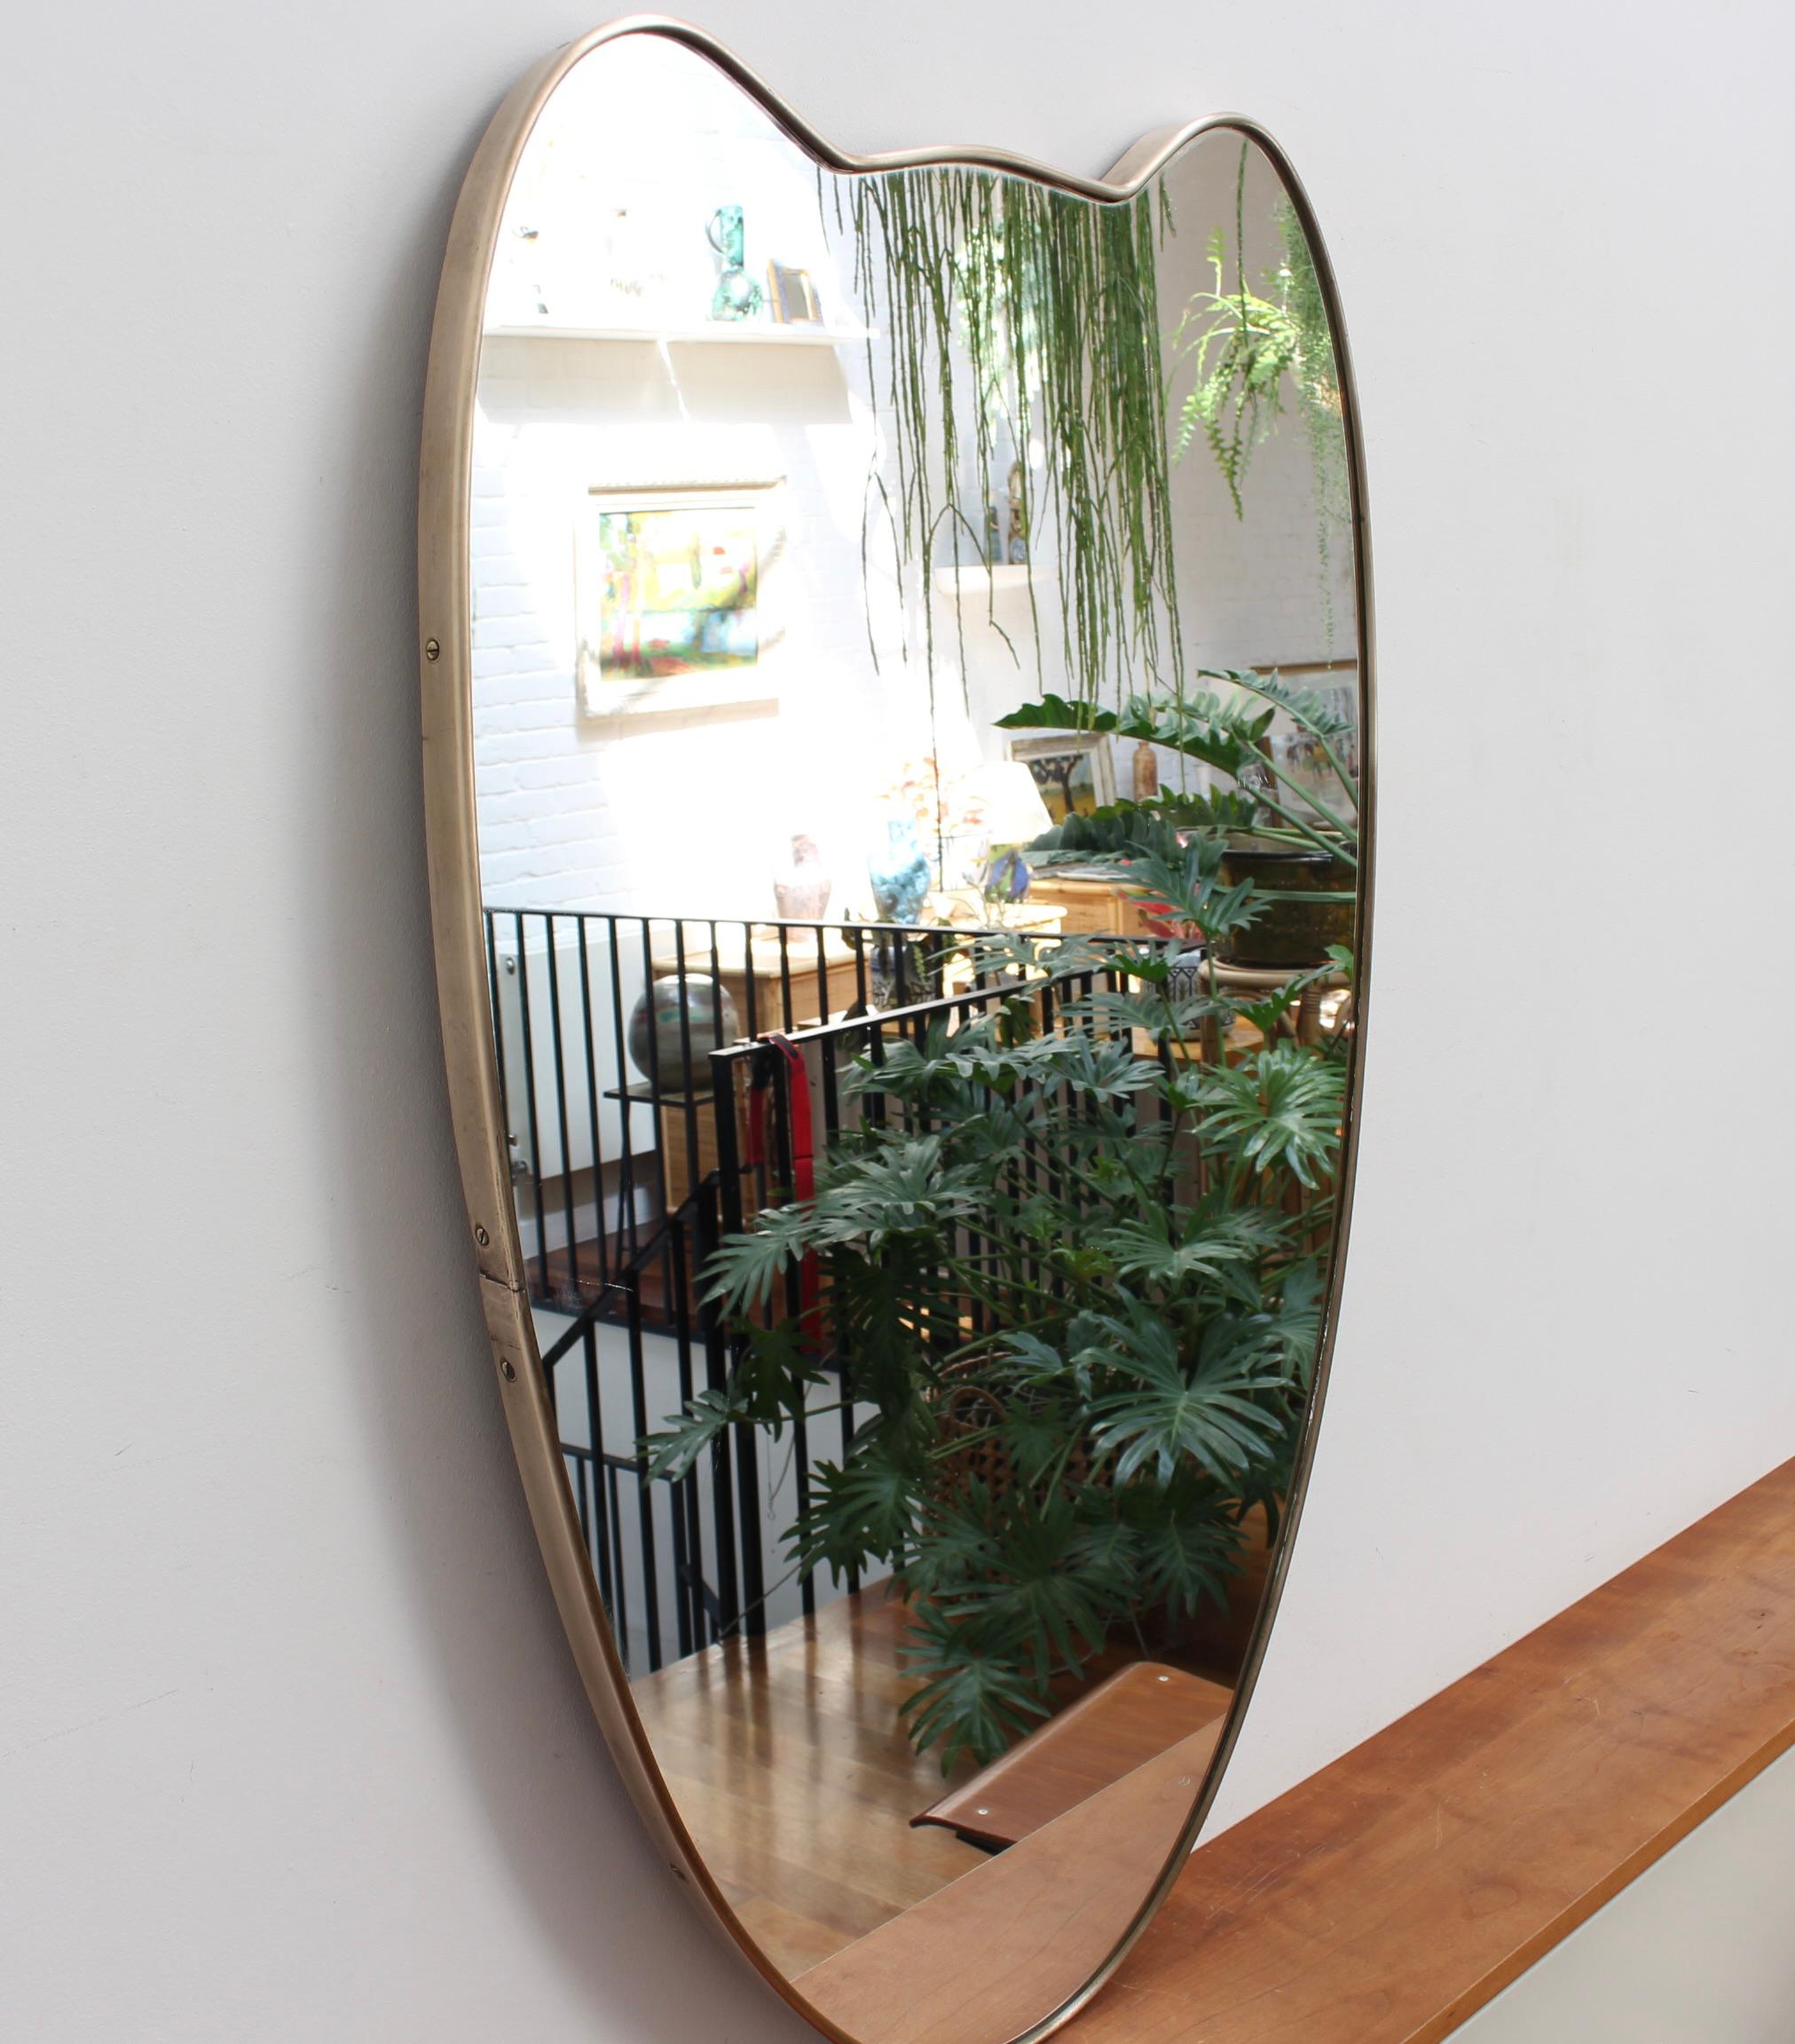 Italienischer Wandspiegel aus der Mitte des Jahrhunderts mit Messingrahmen (ca. 1950). Der Spiegel ist klassisch geformt und zeichnet sich durch einen modernen Stil aus. Es ist insgesamt in sehr gutem Zustand. Auf dem frisch polierten Messingrahmen